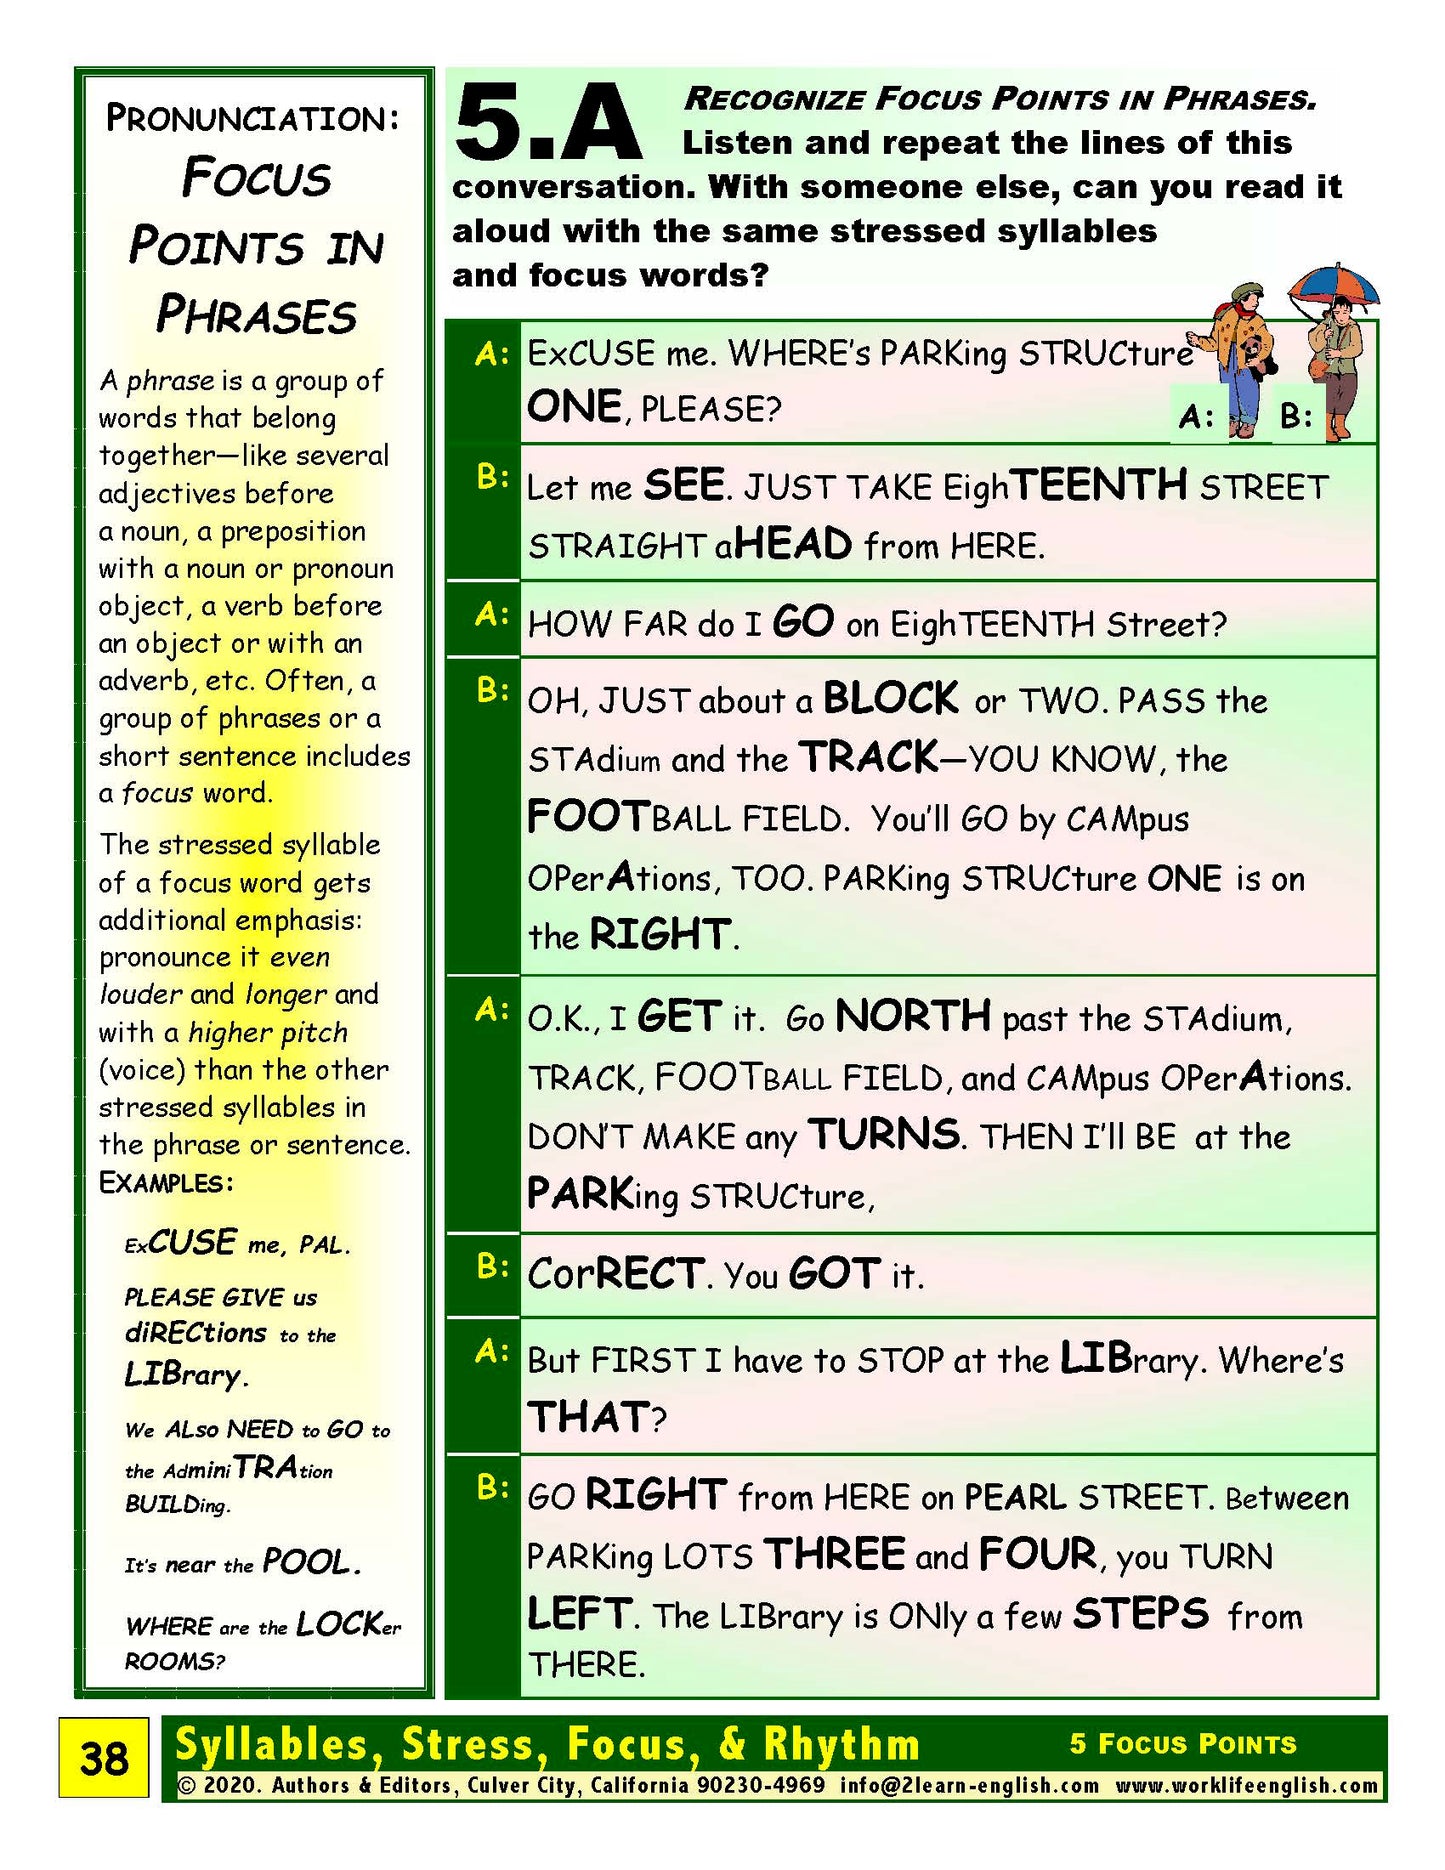 E-02.05 Recognize, Pronounce, & Contrast Focus Points in Place Names, Phrases, & Sentences